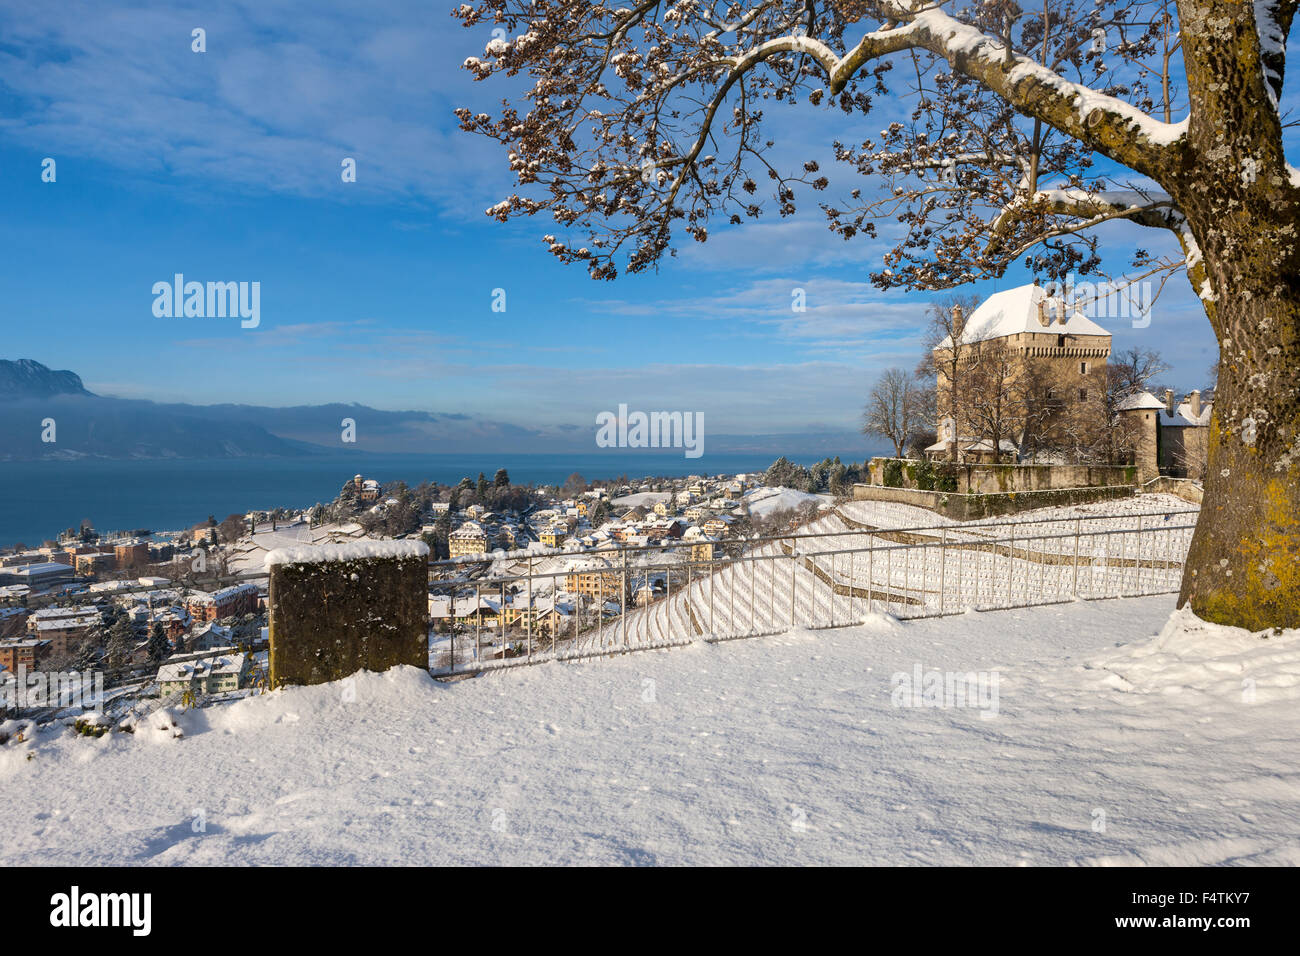 Il castello di Châtelard, Chatelard, Svizzera, del cantone di Vaud, sul lago di Ginevra, Leman, inverno Foto Stock